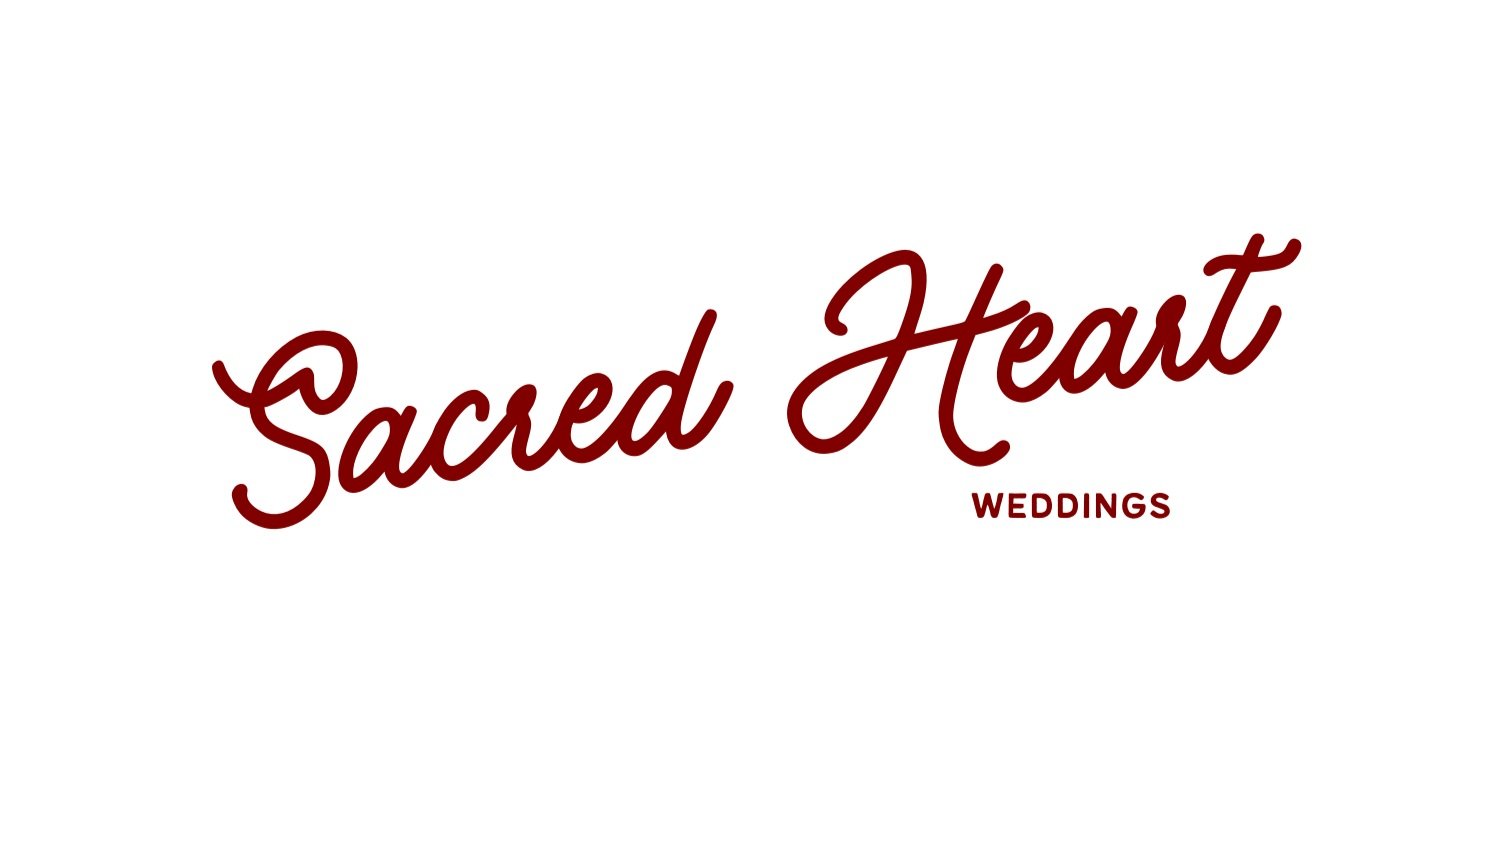 Sacred Heart Weddings